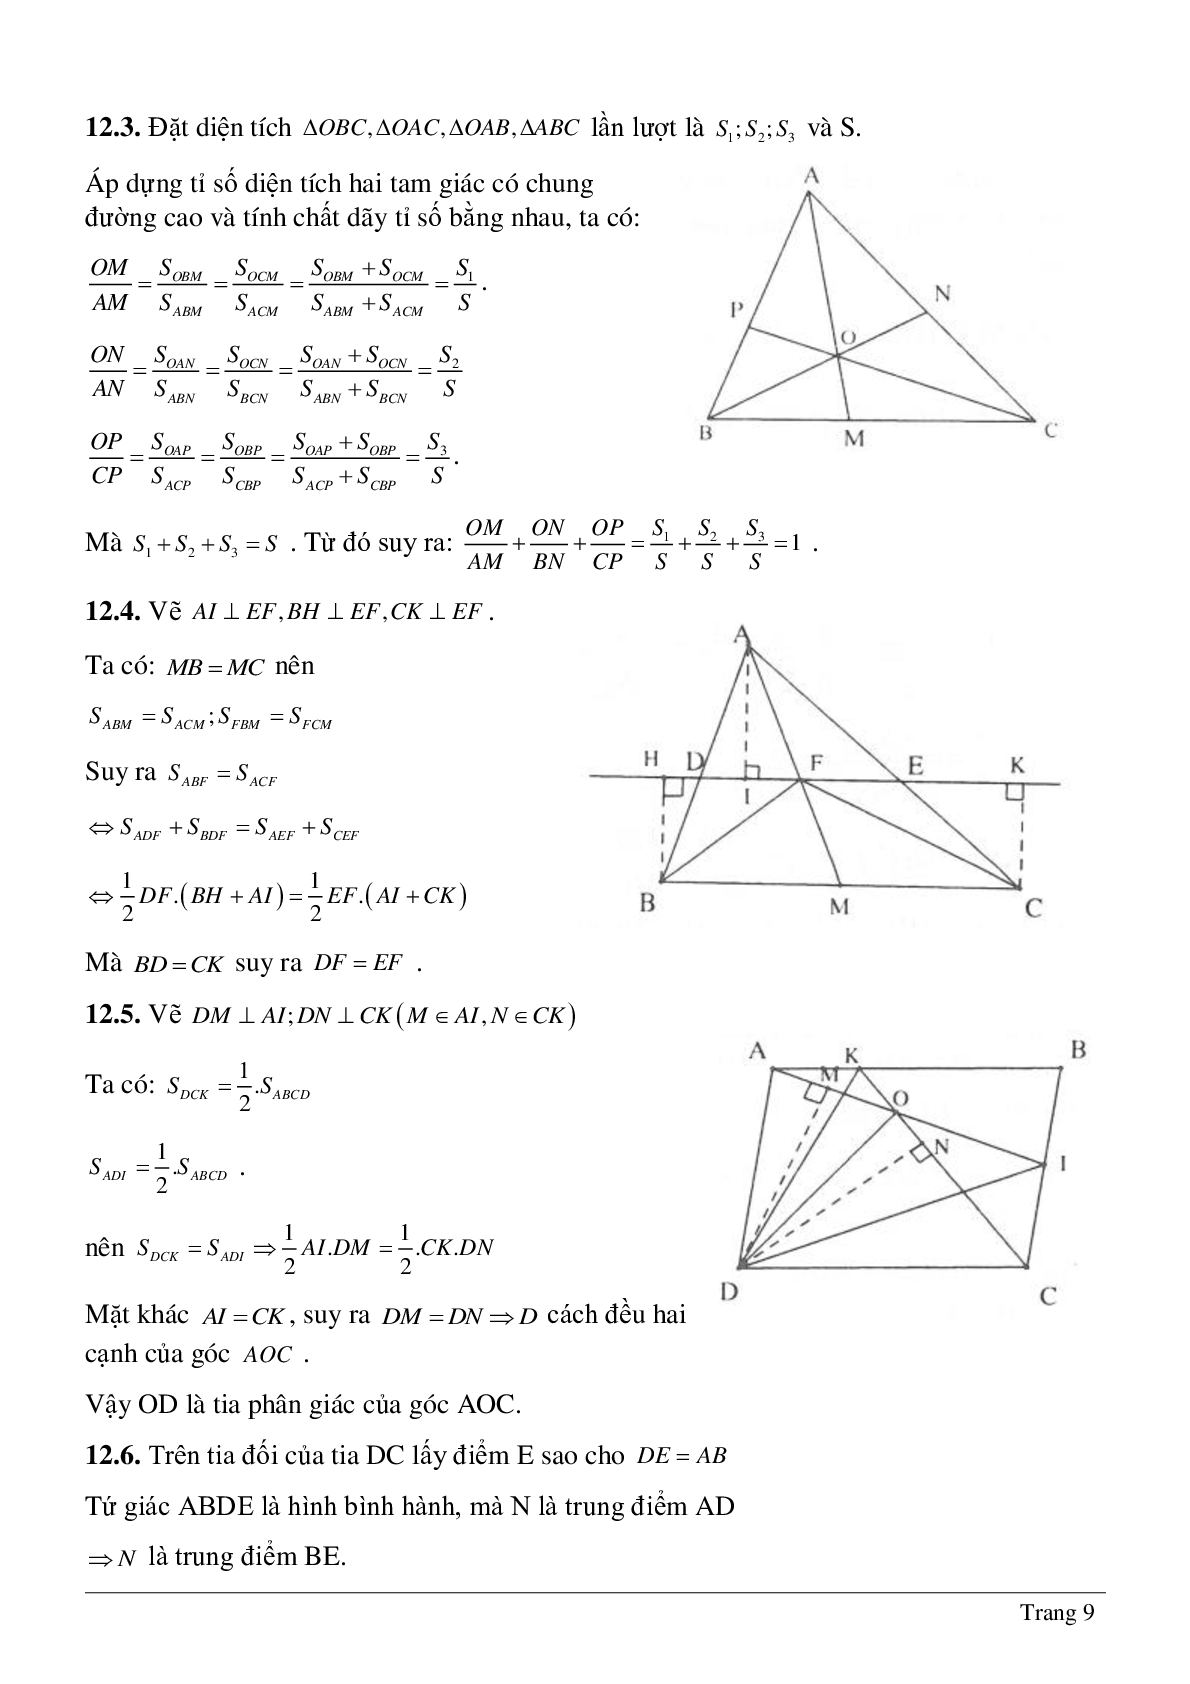 Phương pháp diện tích - Hình học toán 8 (trang 9)